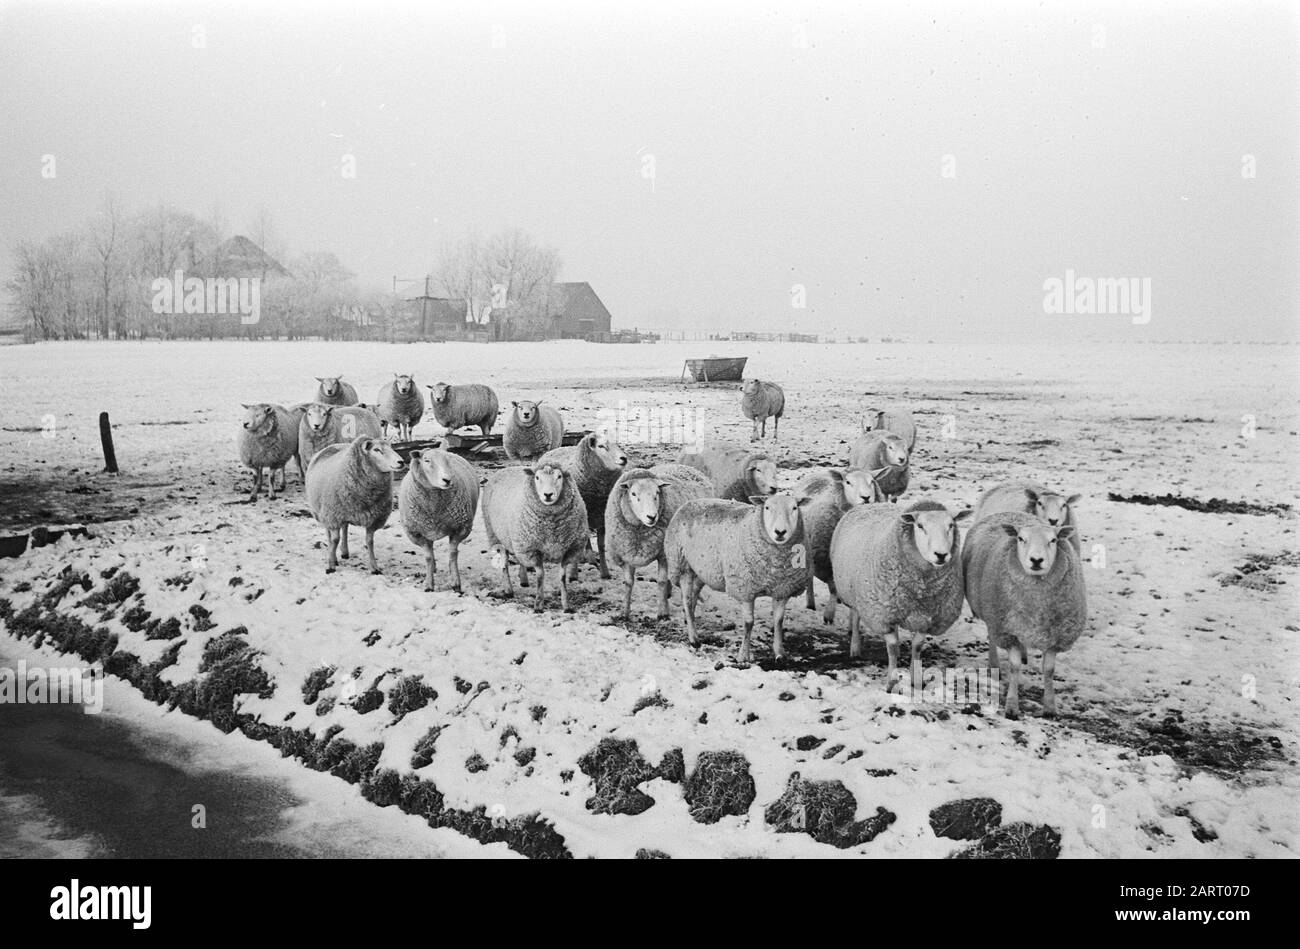 Volendam; moutons dans le Beemster dans la neige Date : 5 janvier 1971 lieu : Noord-Holland, Volendam mots clés : moutons, NEIGE Banque D'Images